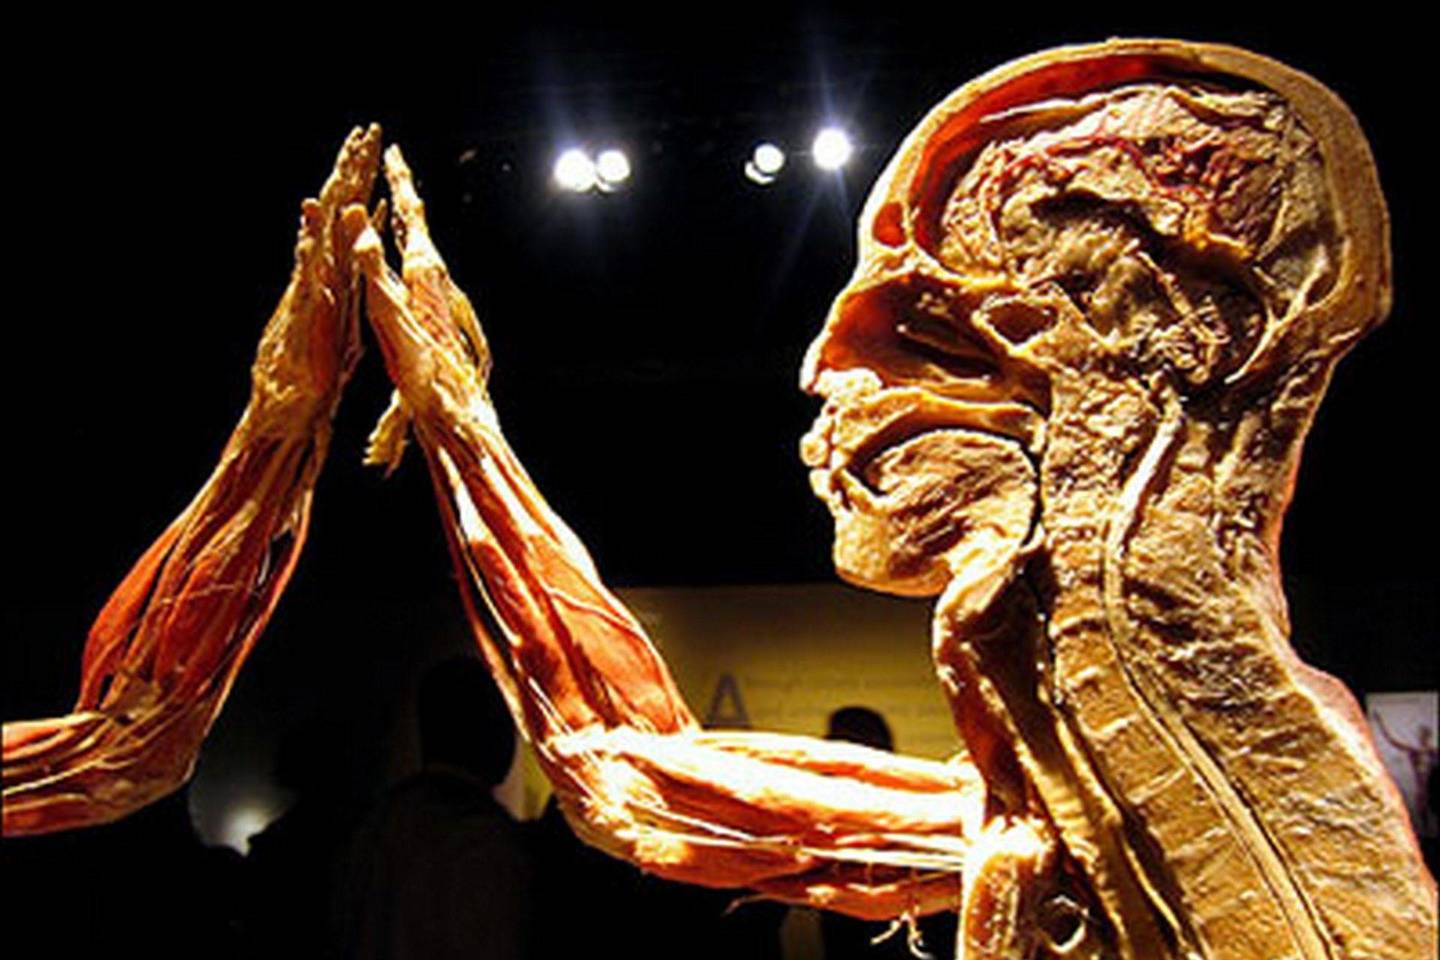 Guntheris von Hagensas yra vokiečių anatomas, išradęs vadinamąją plastinacijos technologiją biologiniams audiniams konservuoti.<br>G. von Hagenso nuotr.